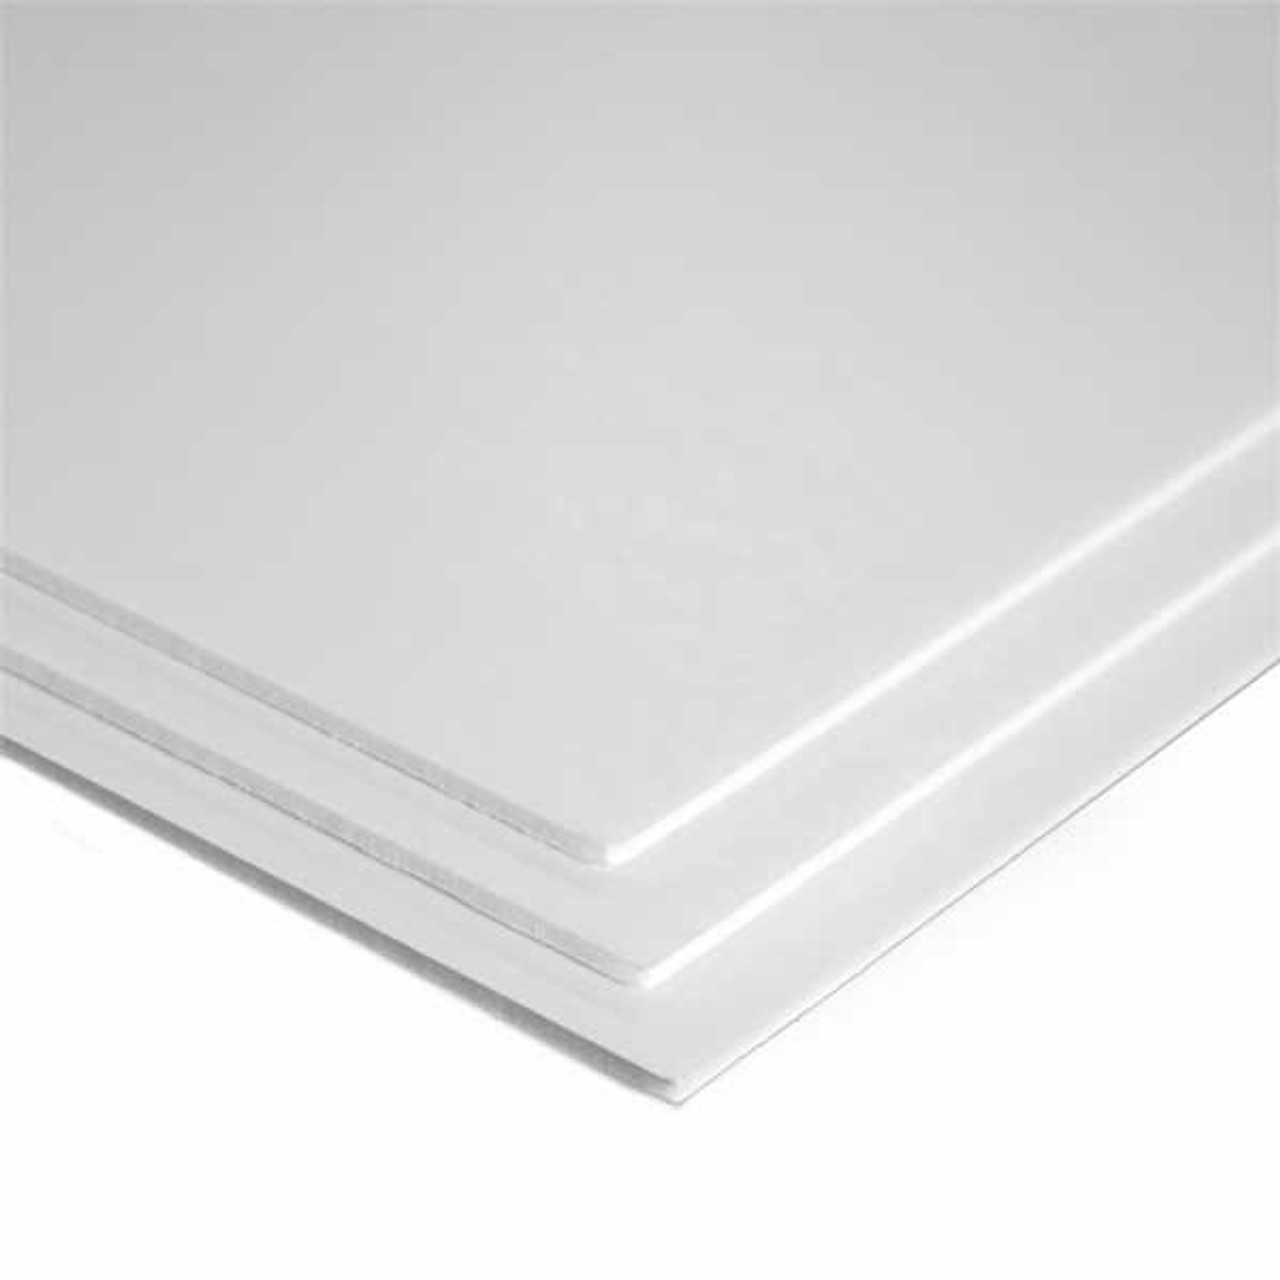 3/16 x 48 x 96 White PVC Sheet